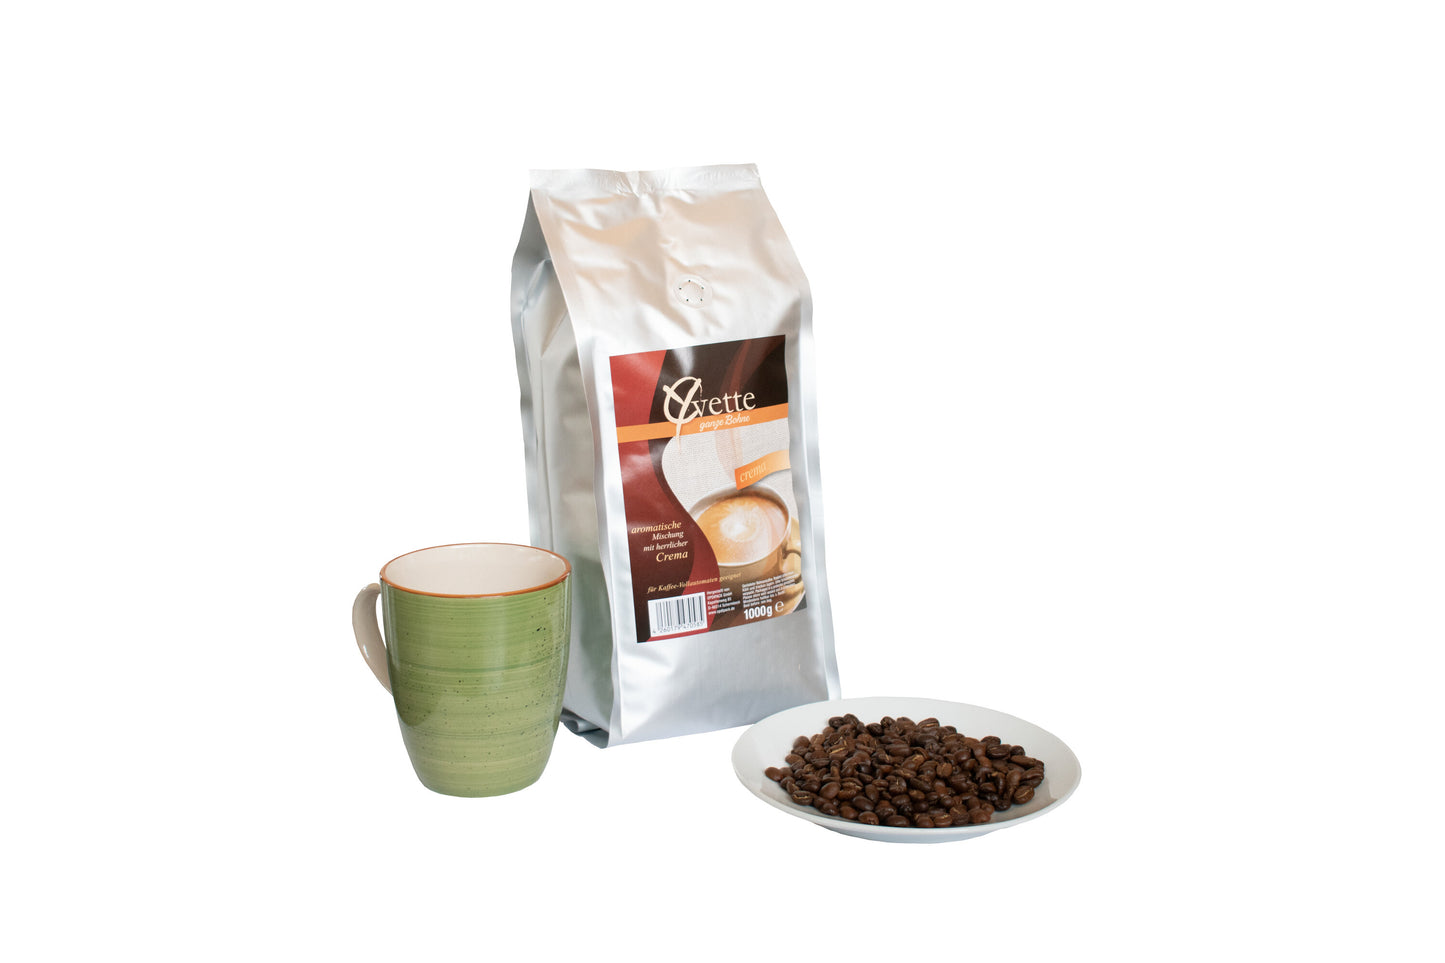 Ein silberner Beutel mit 1000g frisch gerösteten Crema-Kaffeebohnen der Marke Yvette Kaffee. Der Beutel zeigt das Logo der Marke und die Produktbezeichnung. Vor dem Beutel ist ein Teller mit Kaffeebohnen und Kaffee Tasse, die ein Gefühl von Frische und Qualität vermitteln.